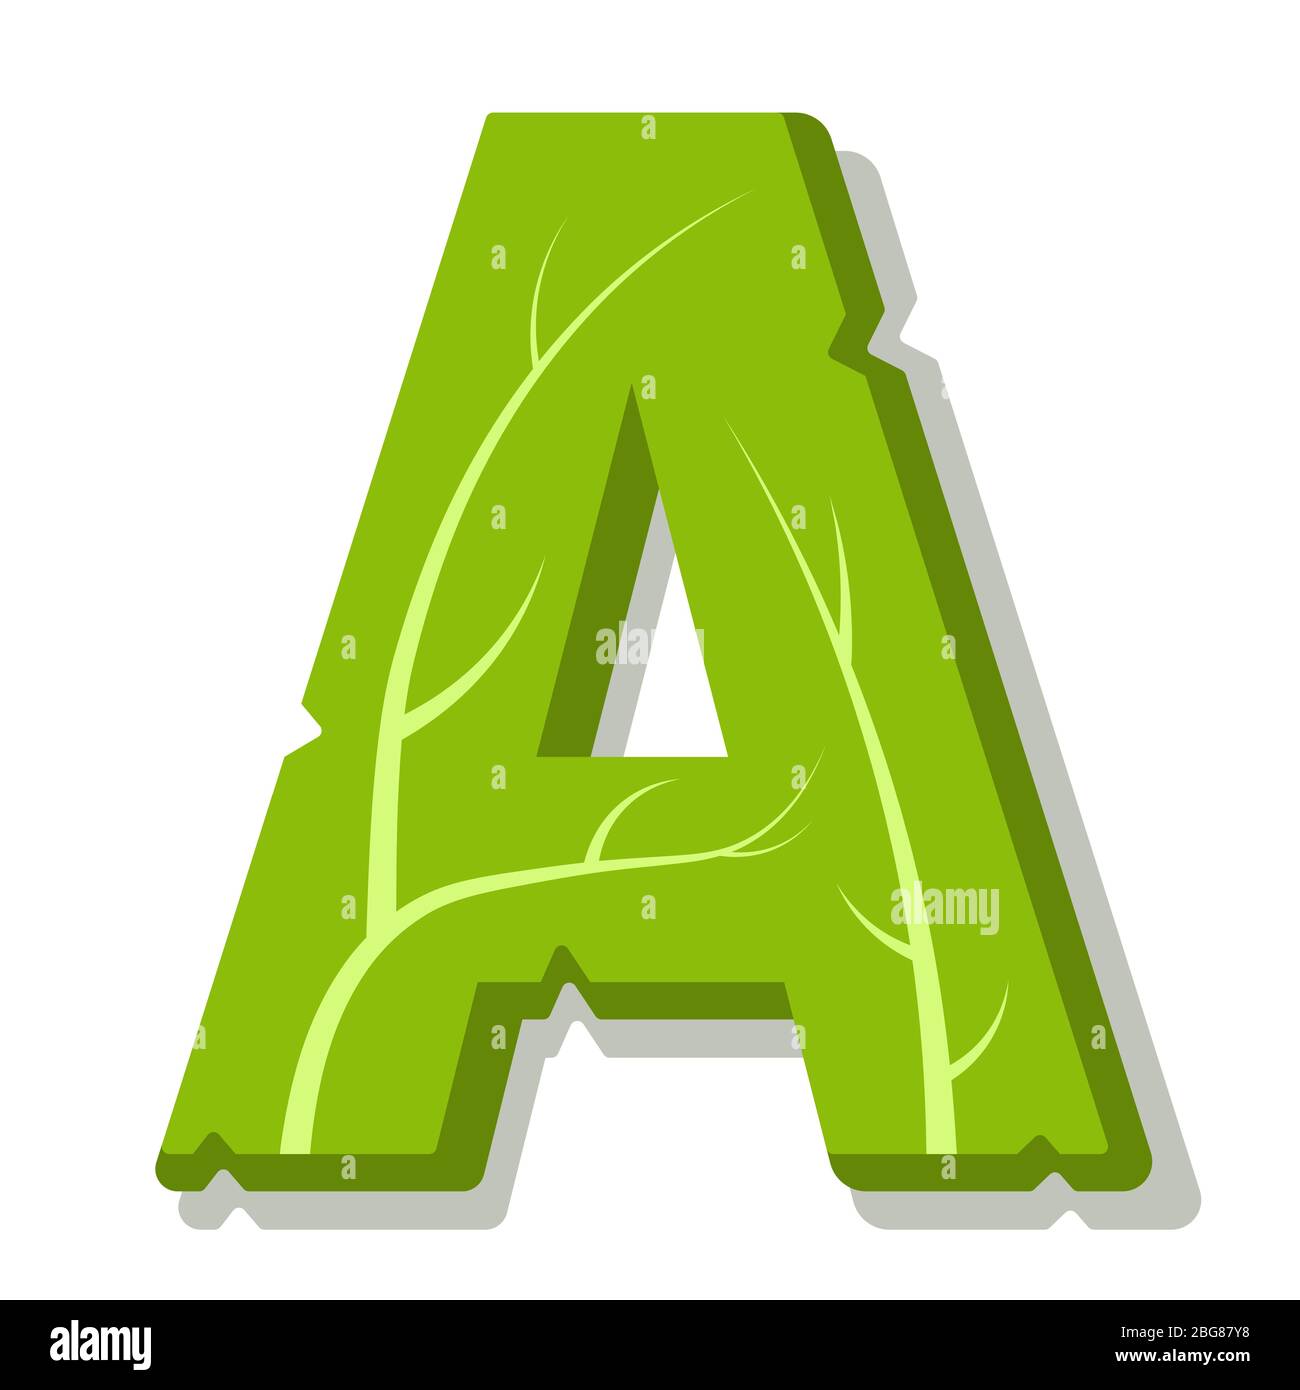 Буква а зеленого цвета. Буква а зеленая. Буквы зеленого цвета. Буква а салатовая. Буква а зеленая на прозрачном фоне.